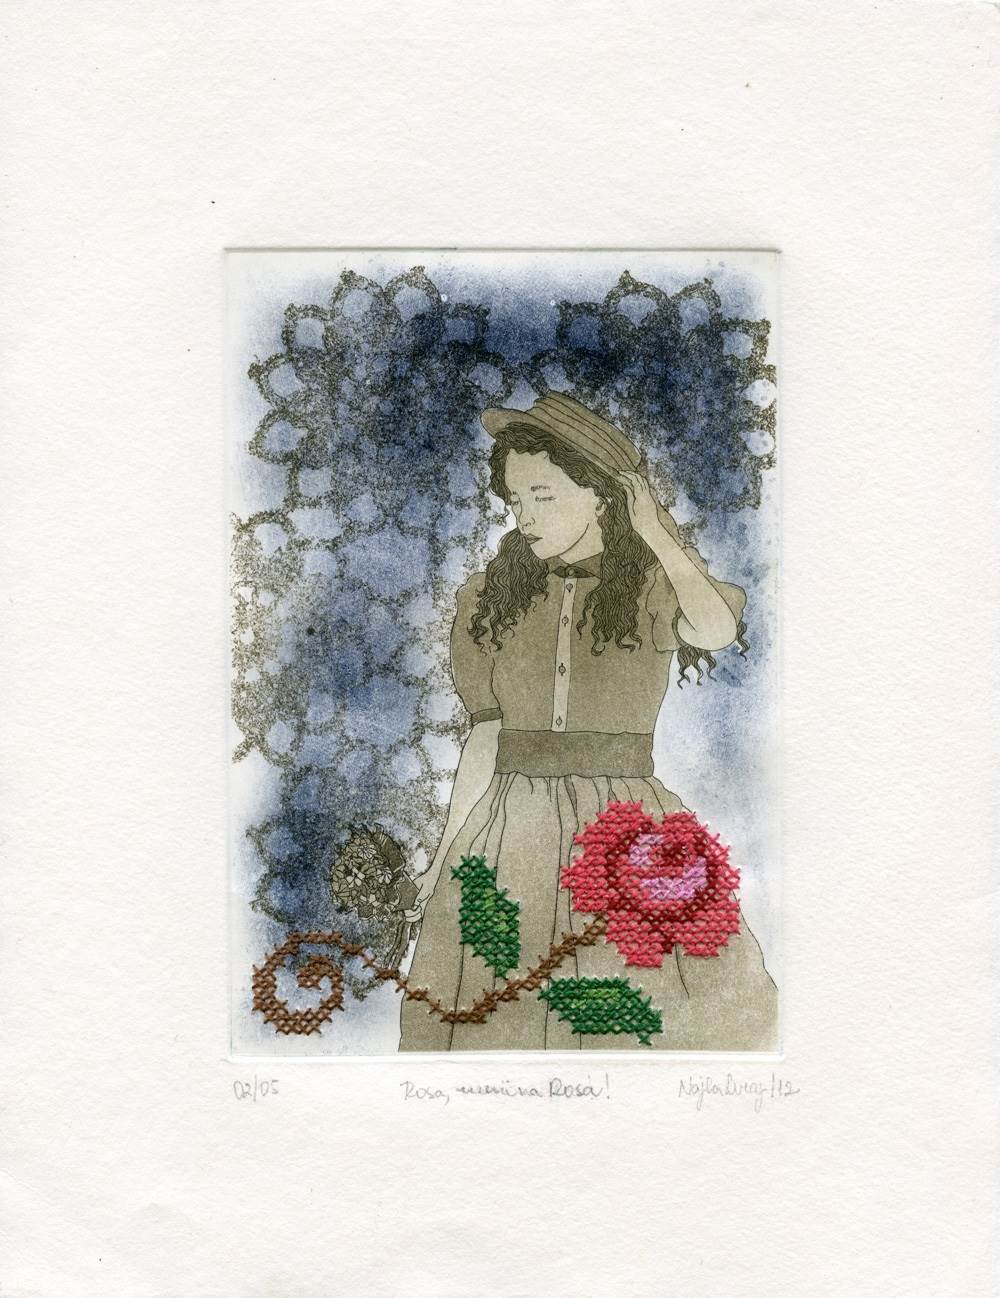 Rosa, menina Rosa!, original   Drawing and Illustration by Najla Leroy